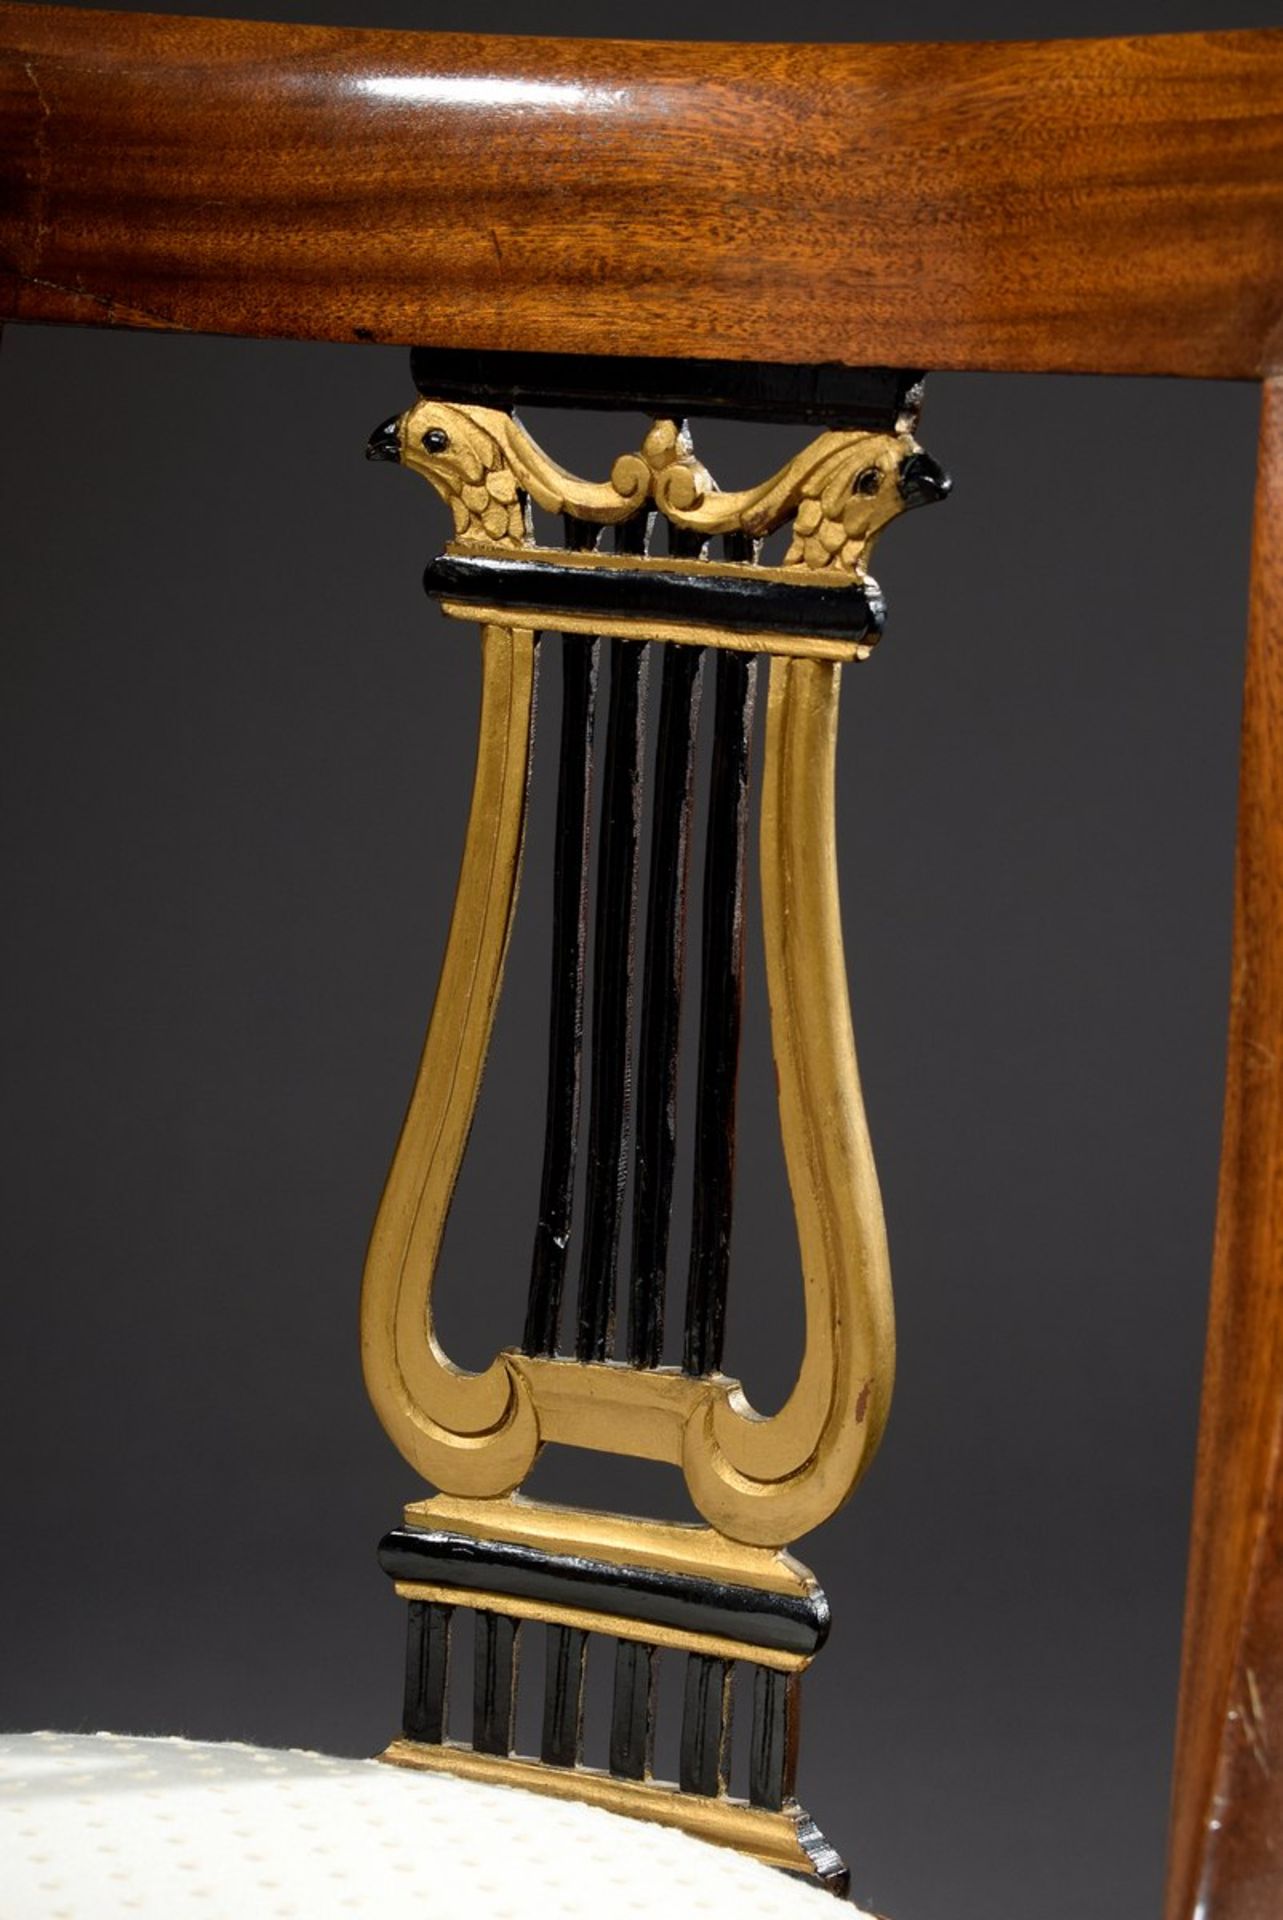 4 Stühle im Empire Stil mit geschnitztem Lyramotiv in der Lehne und hellen Sitzpolstern, Nussbaum, - Image 6 of 8